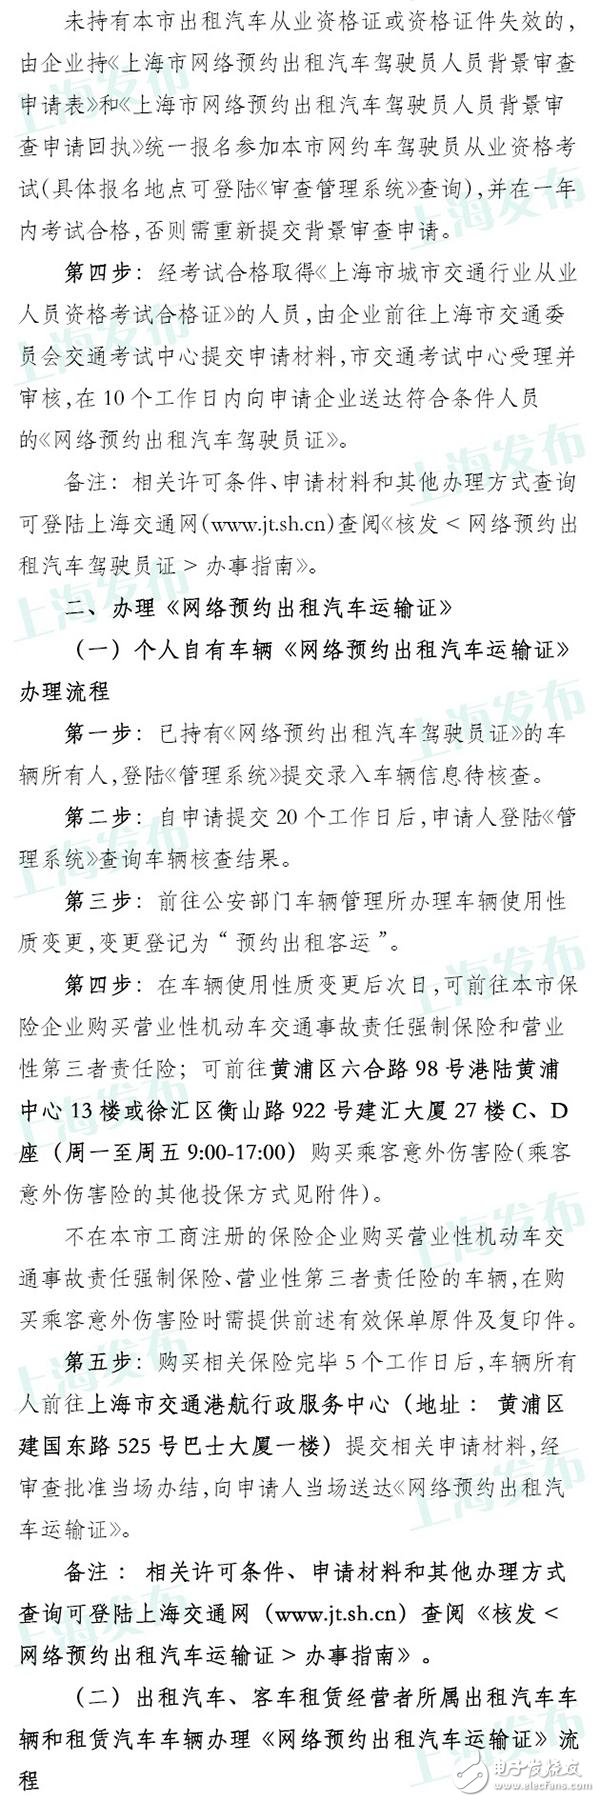 上海网约车申请今日已开放 具体流程公布无从业资格需考试,上海网约车申请今日已开放 具体流程公布无从业资格需考试,第4张